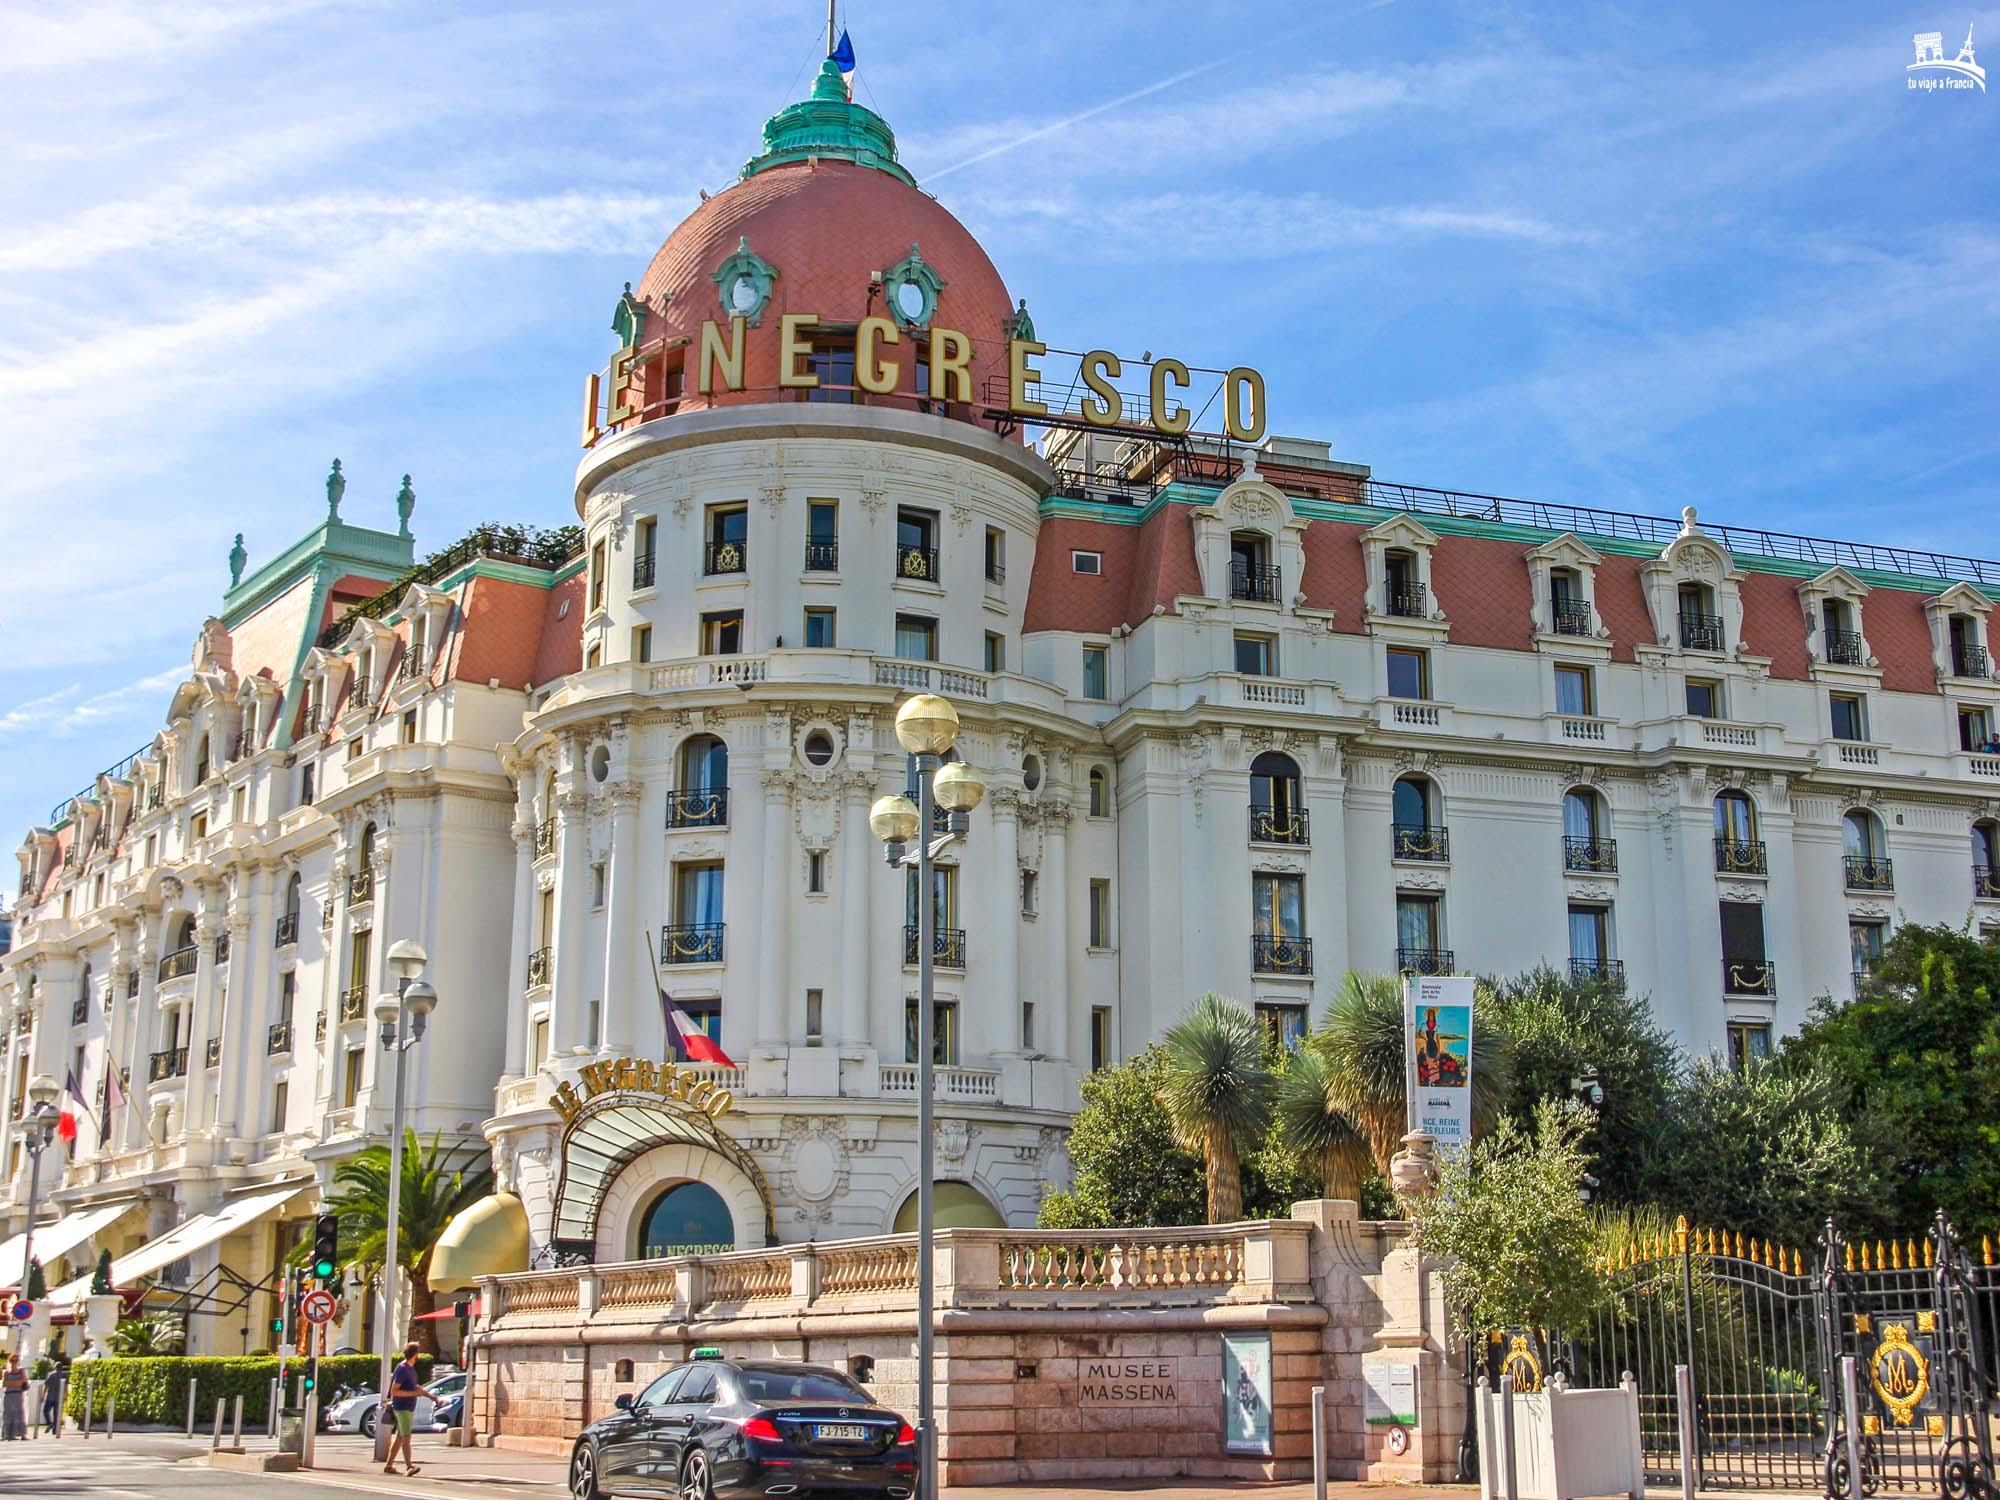 Hotel Negresco de Niza, que ver en la Provenza francesa